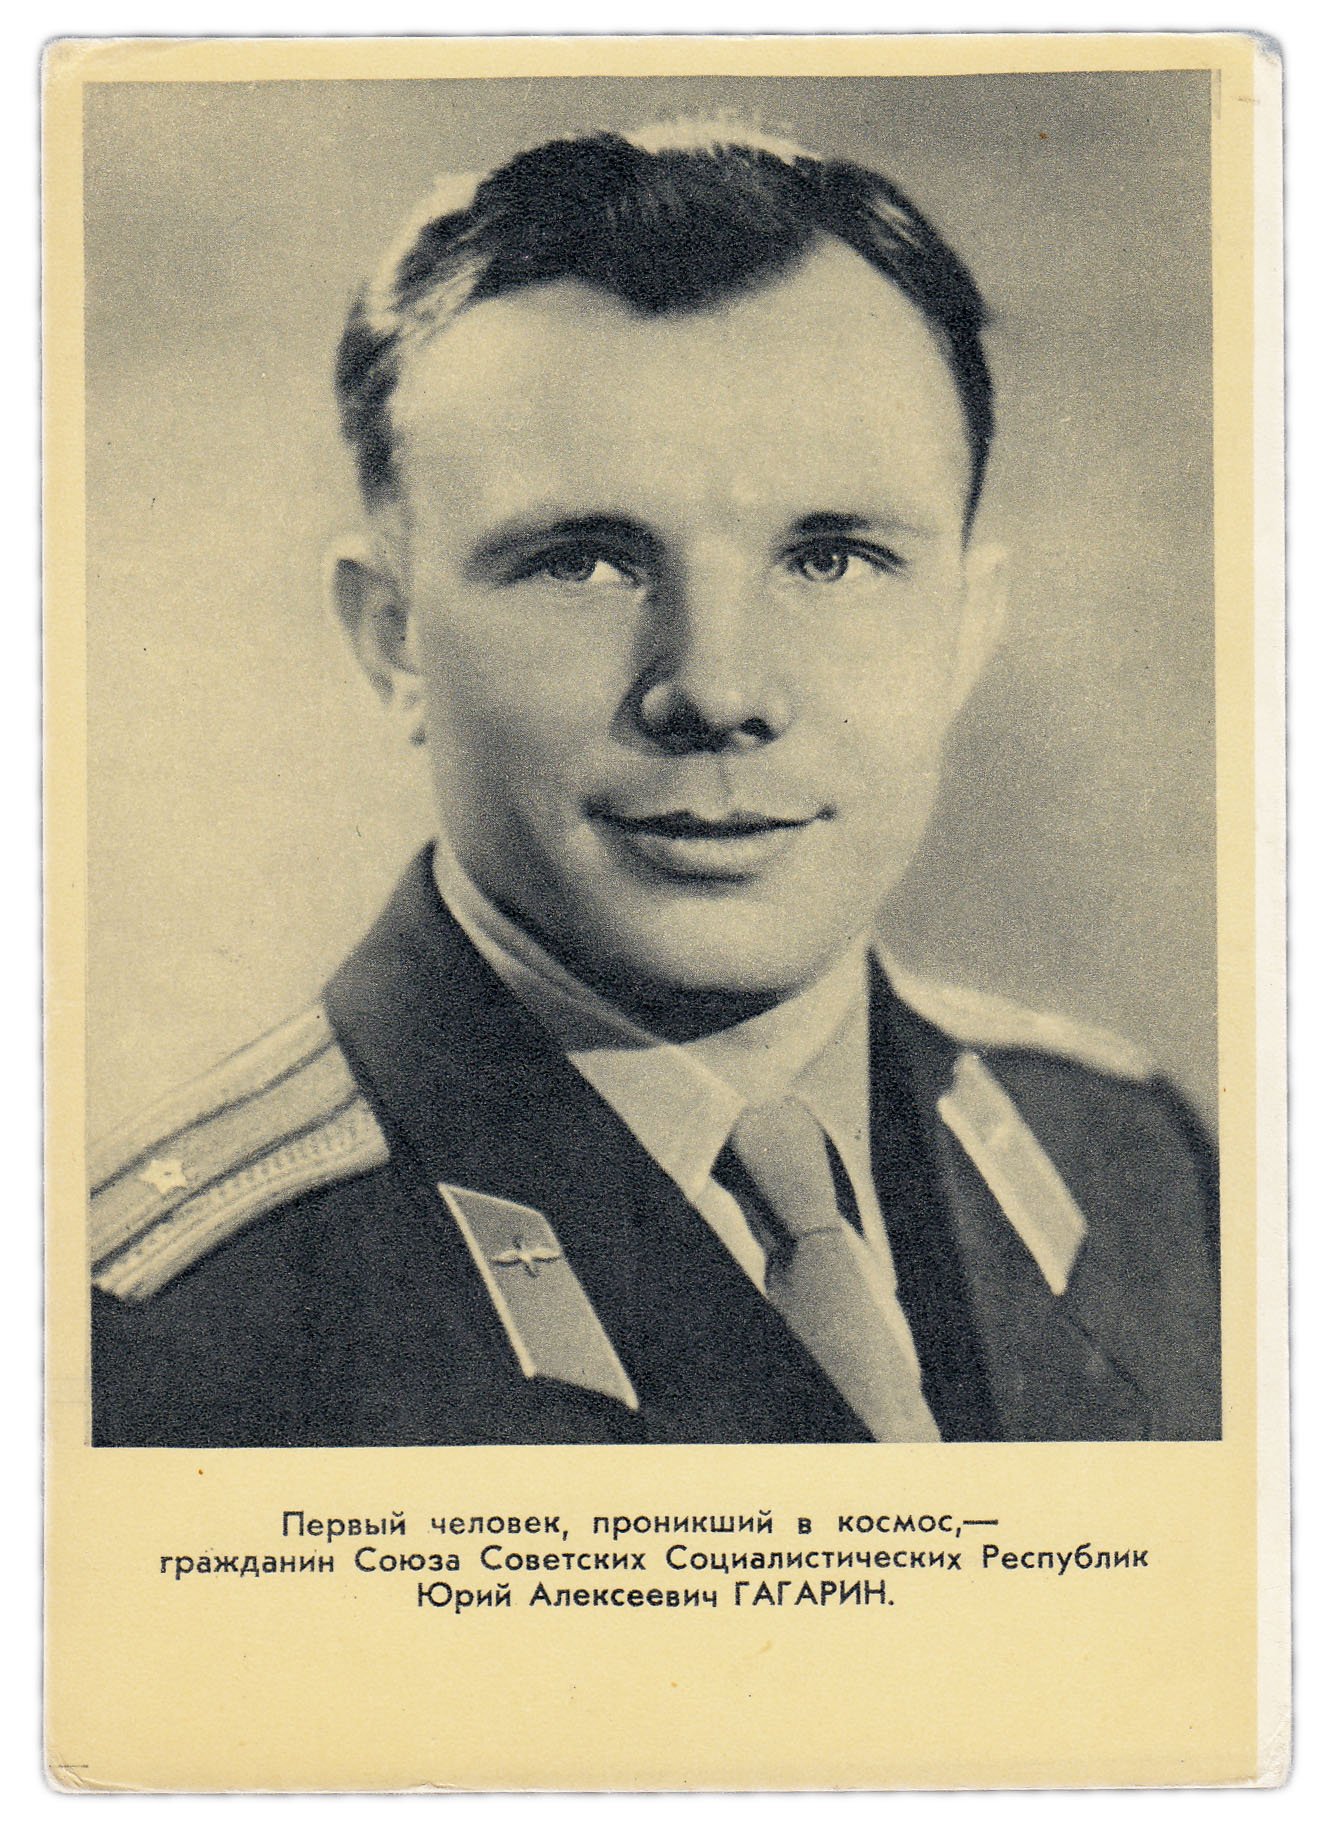 Открытки СССР, 1960-е гг. Гагарин